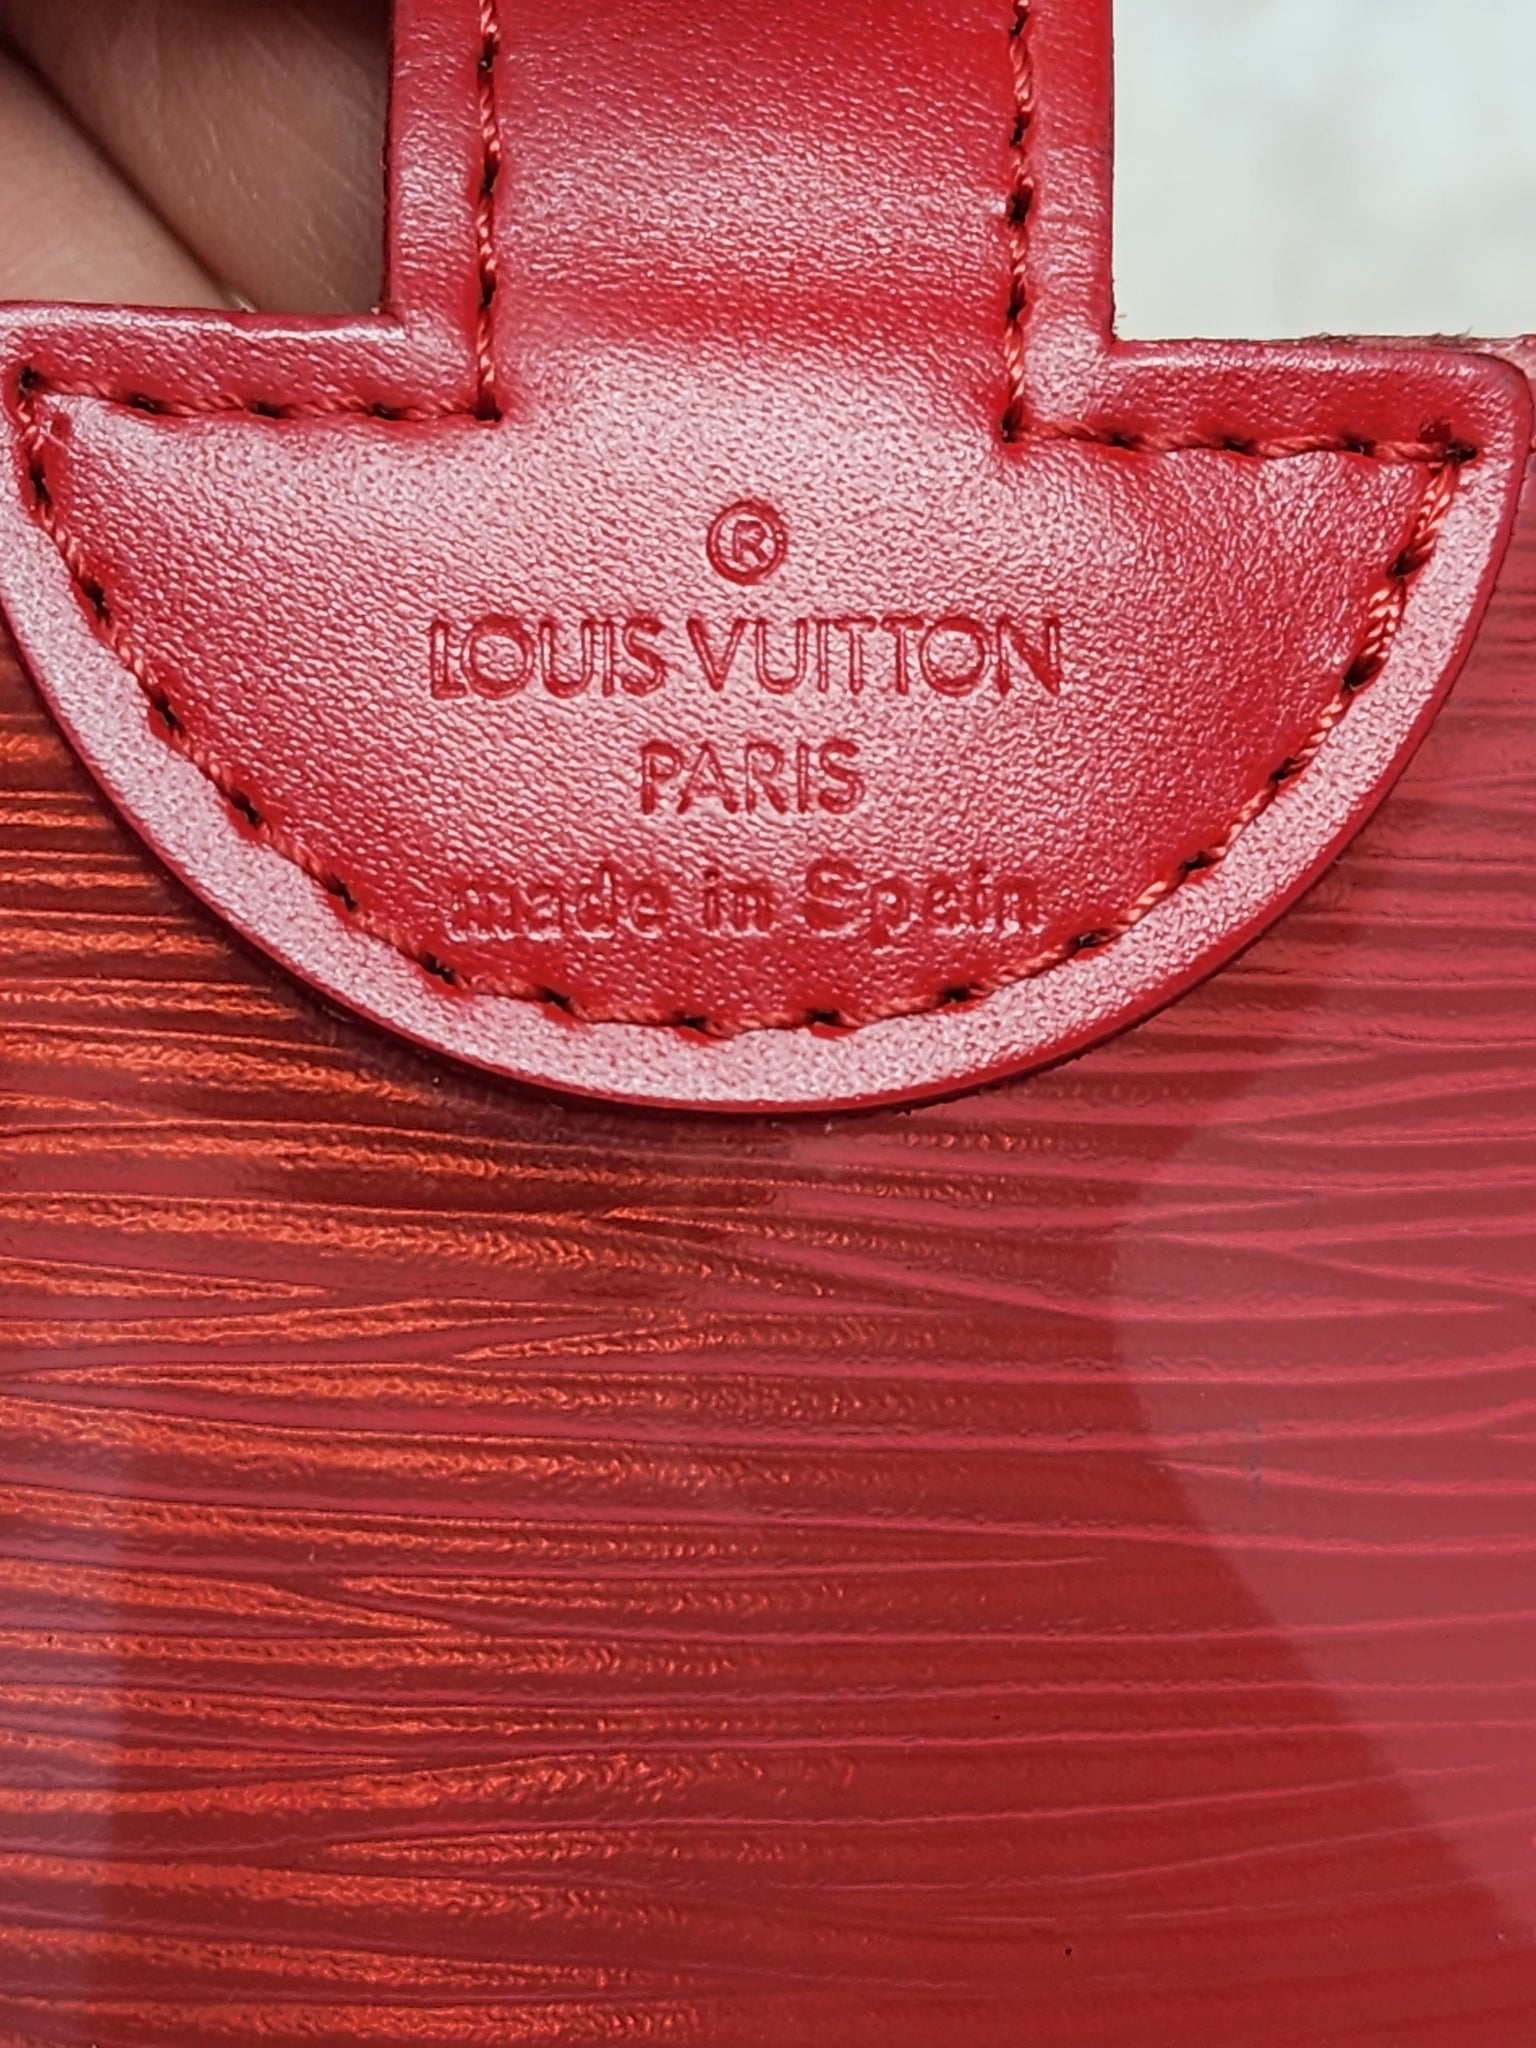 Louis Vuitton Le EPI Plage Beach Tote